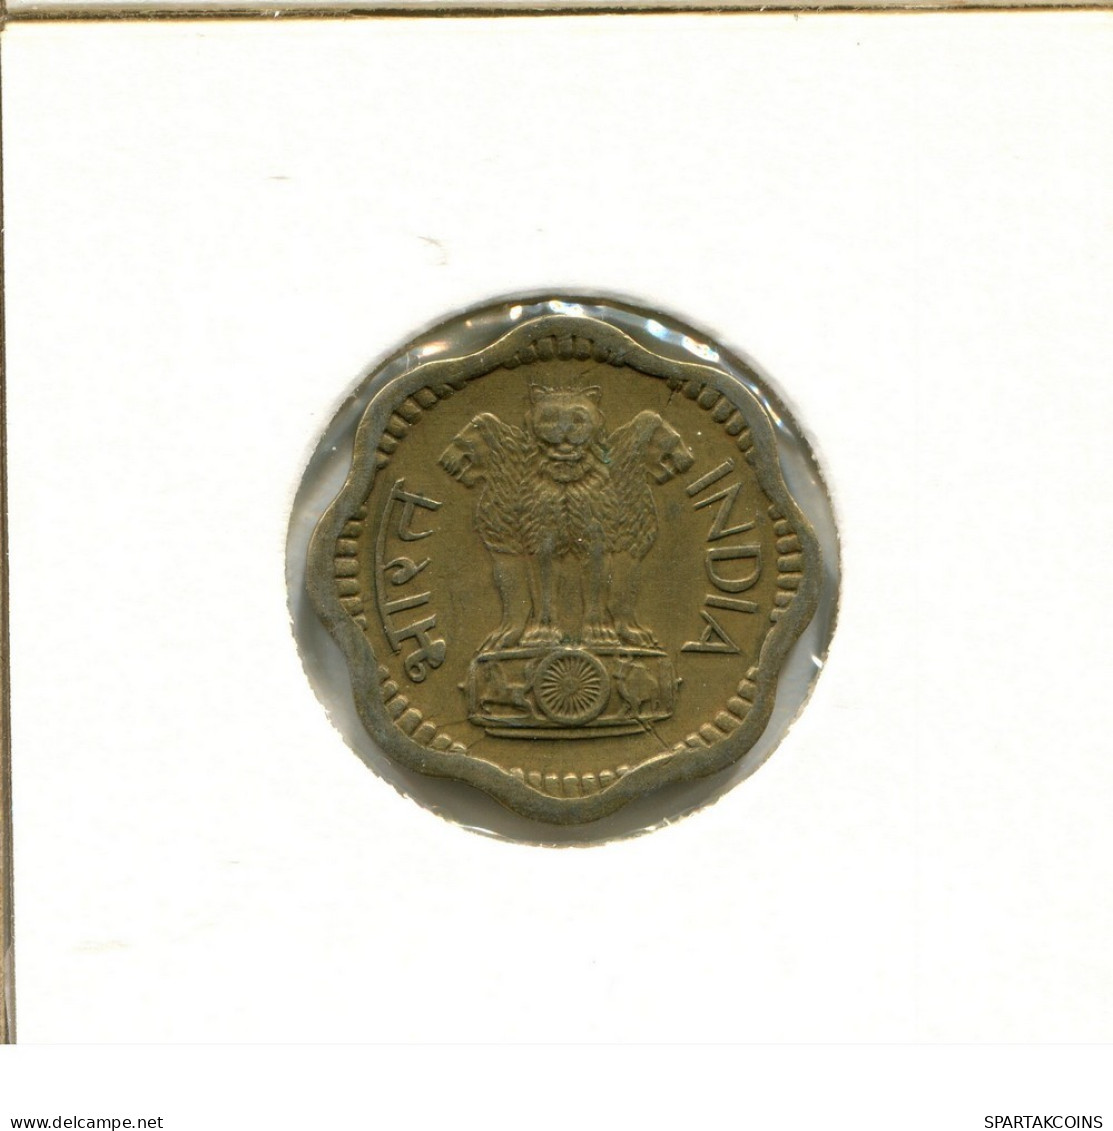 10 PAISE 1968 INDIA Moneda #AY744.E.A - India